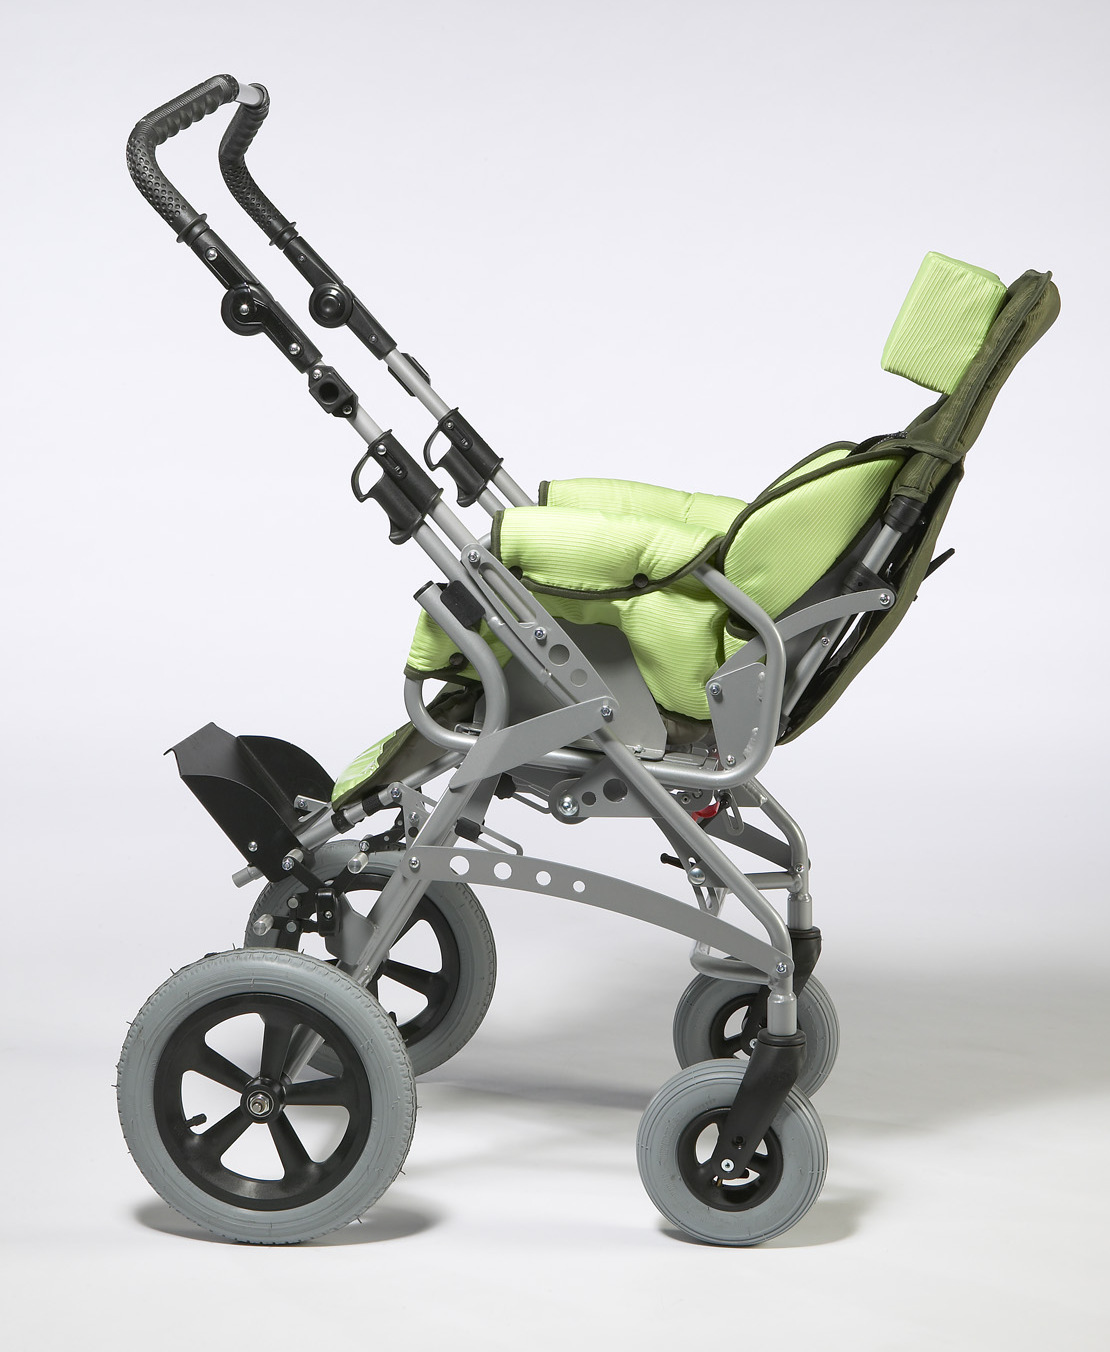 Gemini wózek inwalidzki dla dzieci w pozycji twarzą do rodzica